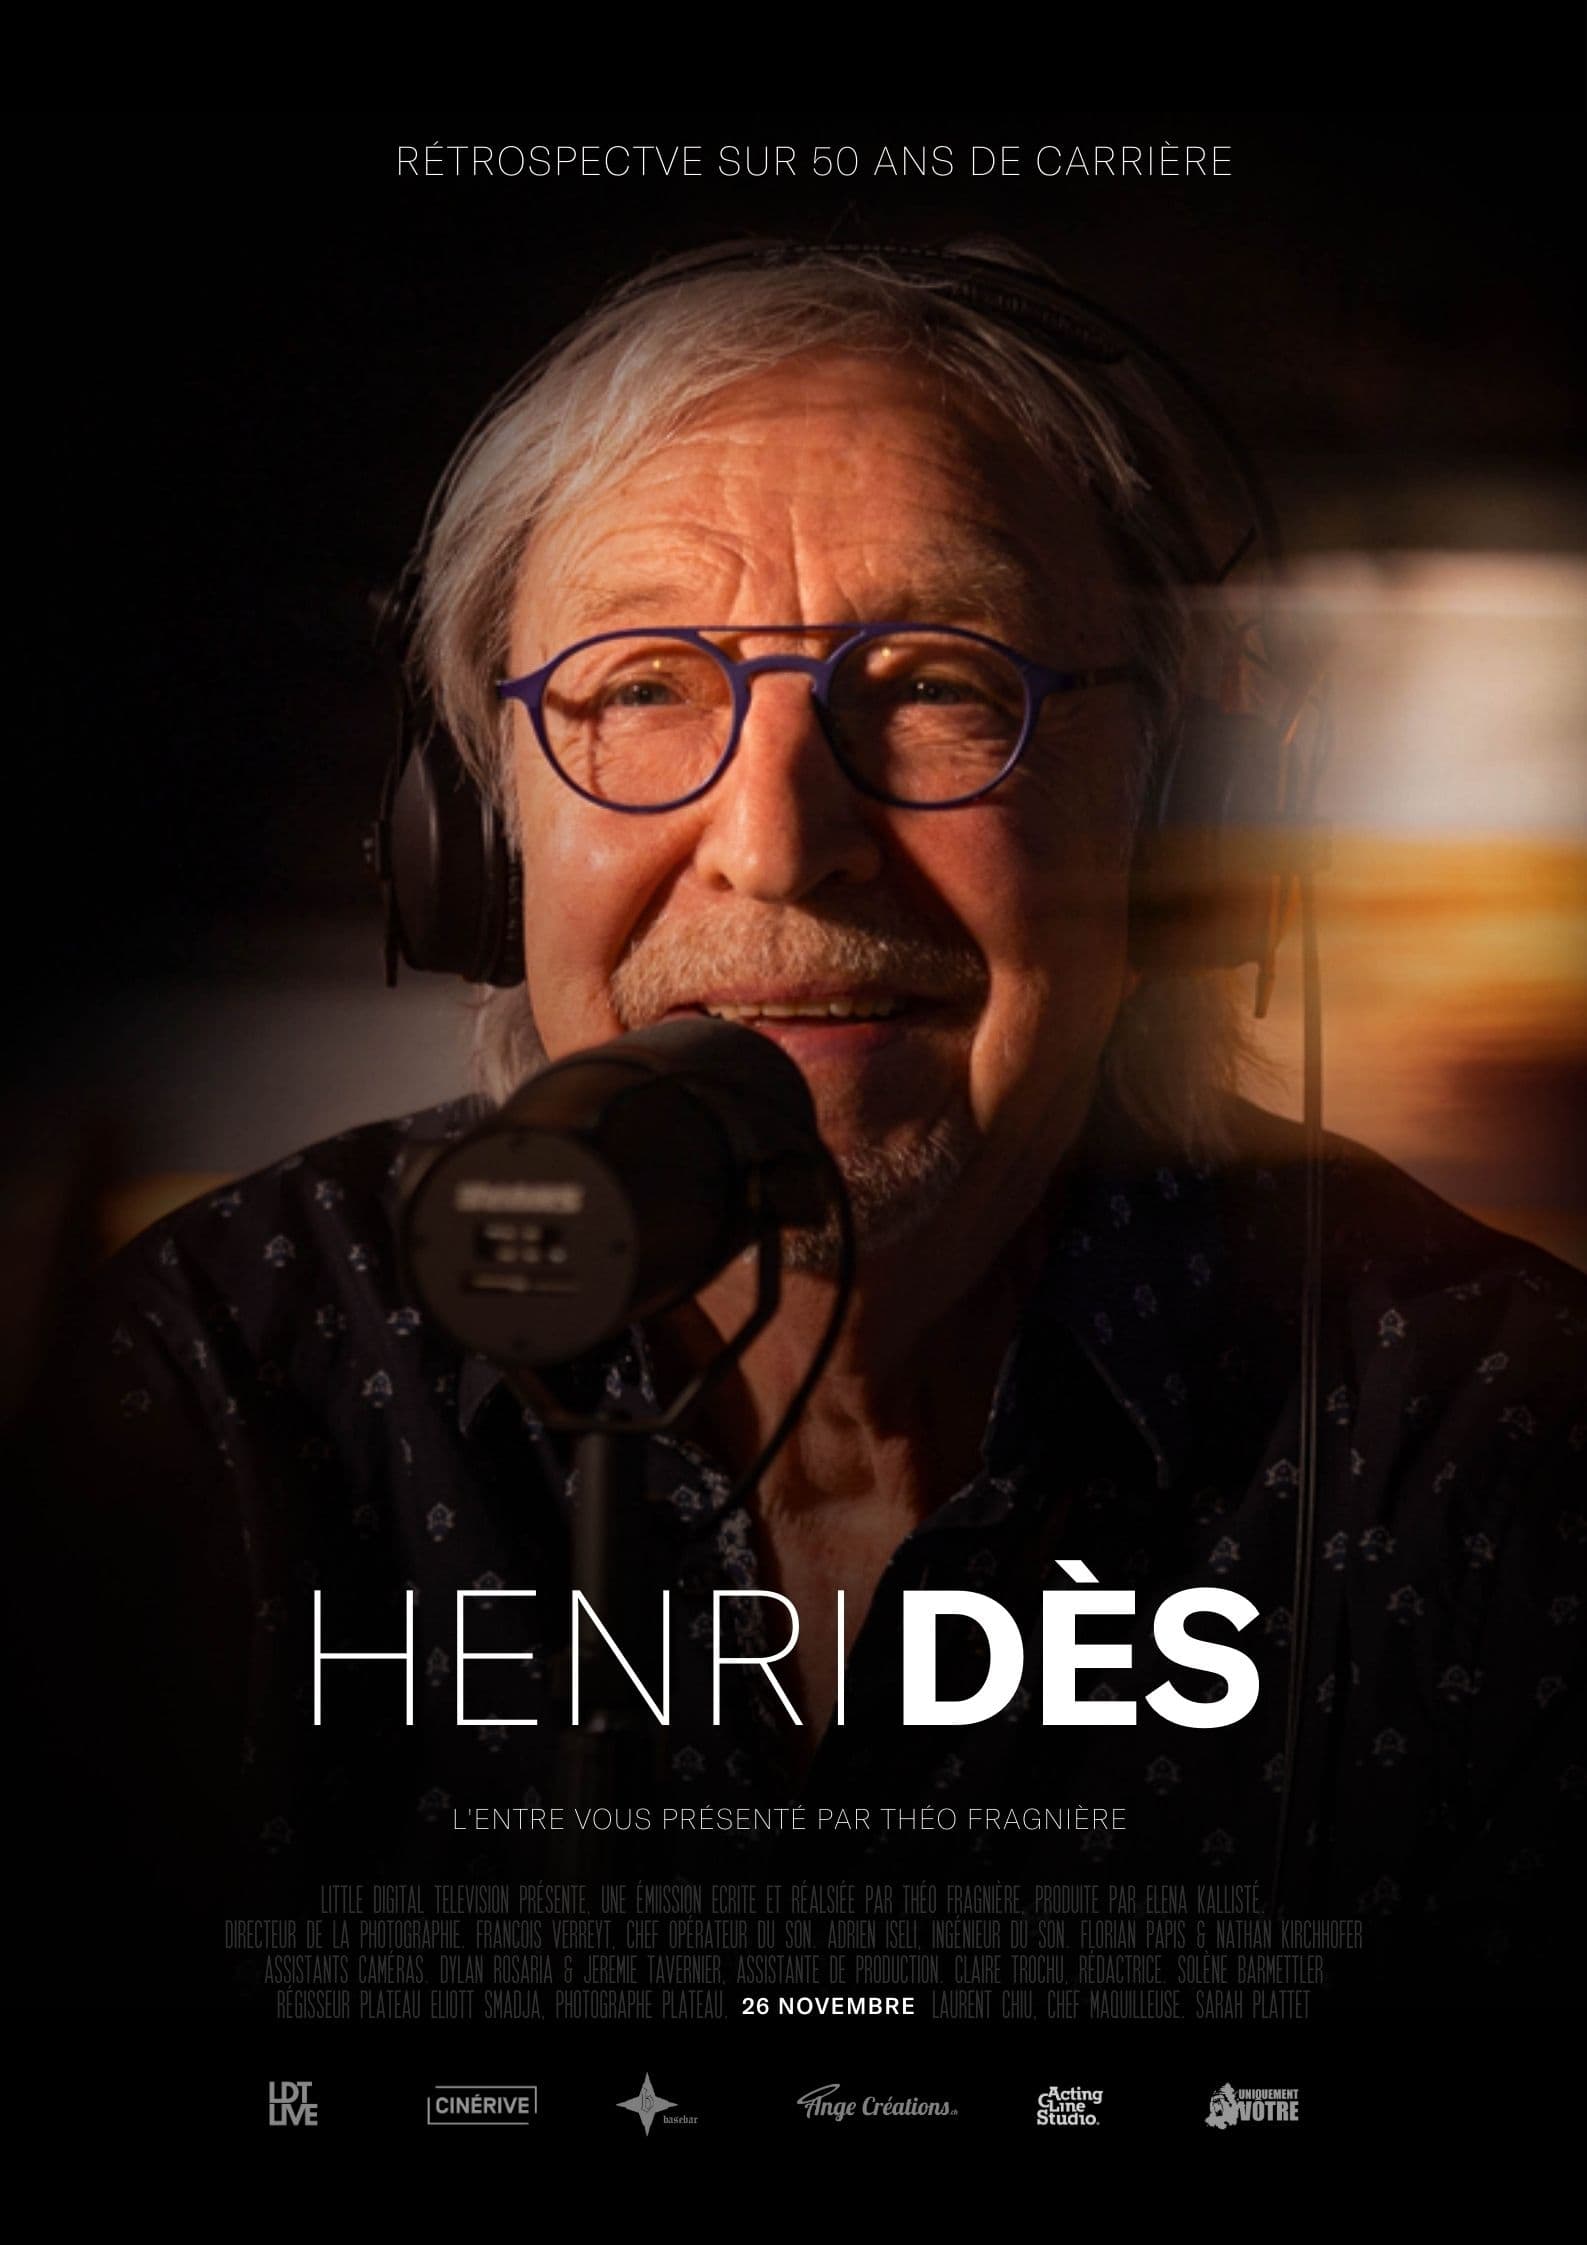 Henri Dès, his retrospective interview